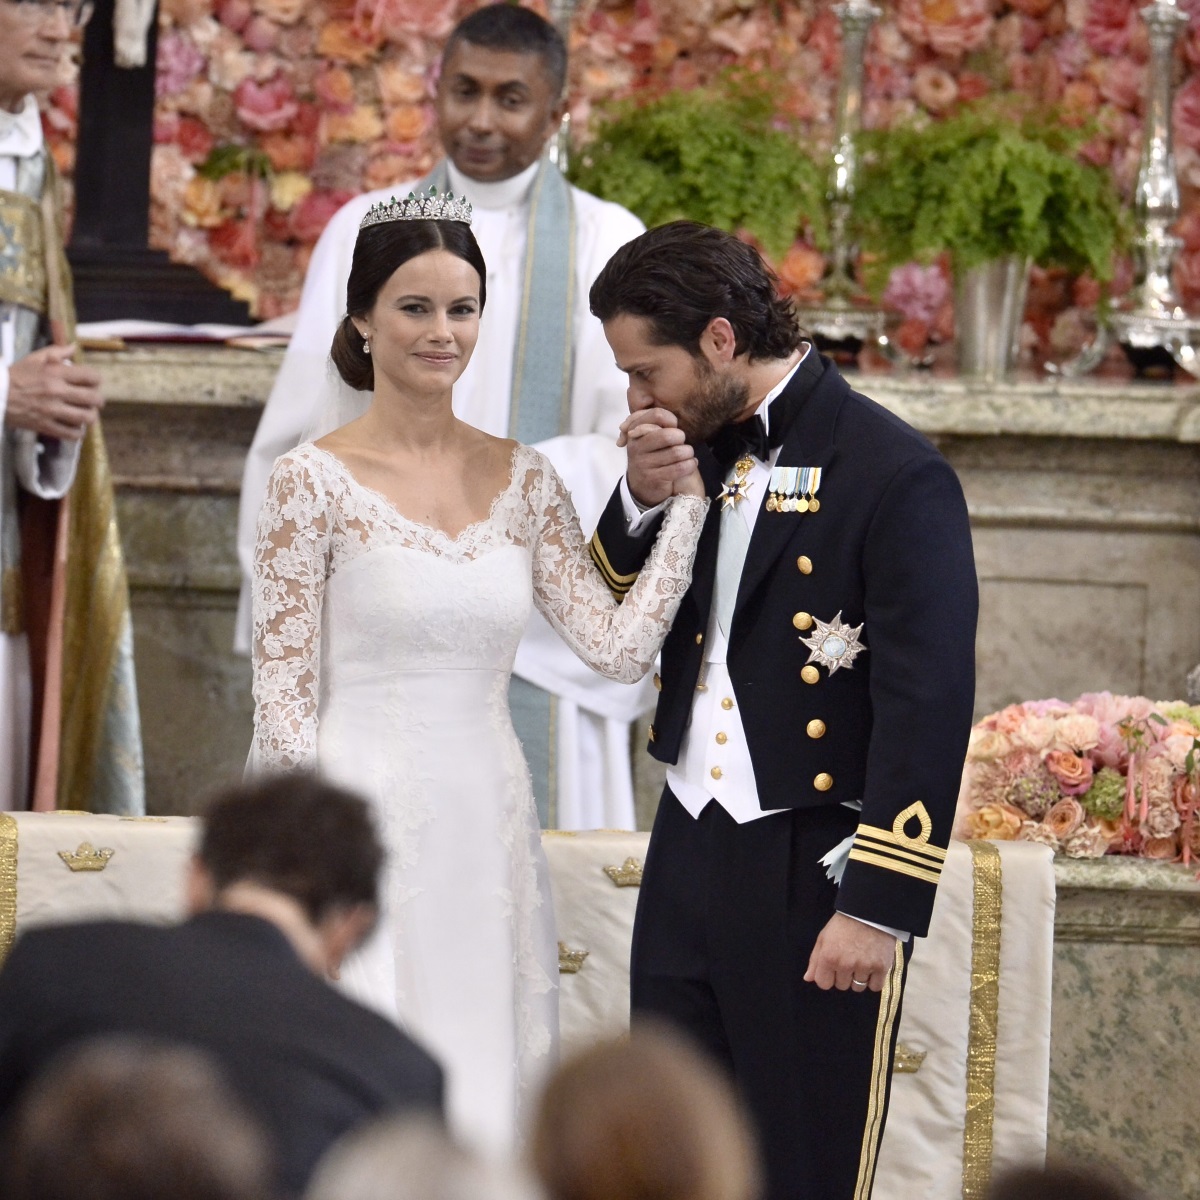 Красивият принц Карл Филип от Швеция се ожени за невероятната принцеса София през 2015 г. Цената на роклята не се разкрива, но се знае, че тя е изработена от копринена органза, креп и ръчно изработена дантела в три нюанса на бялото. Нейният дълъг шлейф е също ръчно изрязан и ръчно зашит.